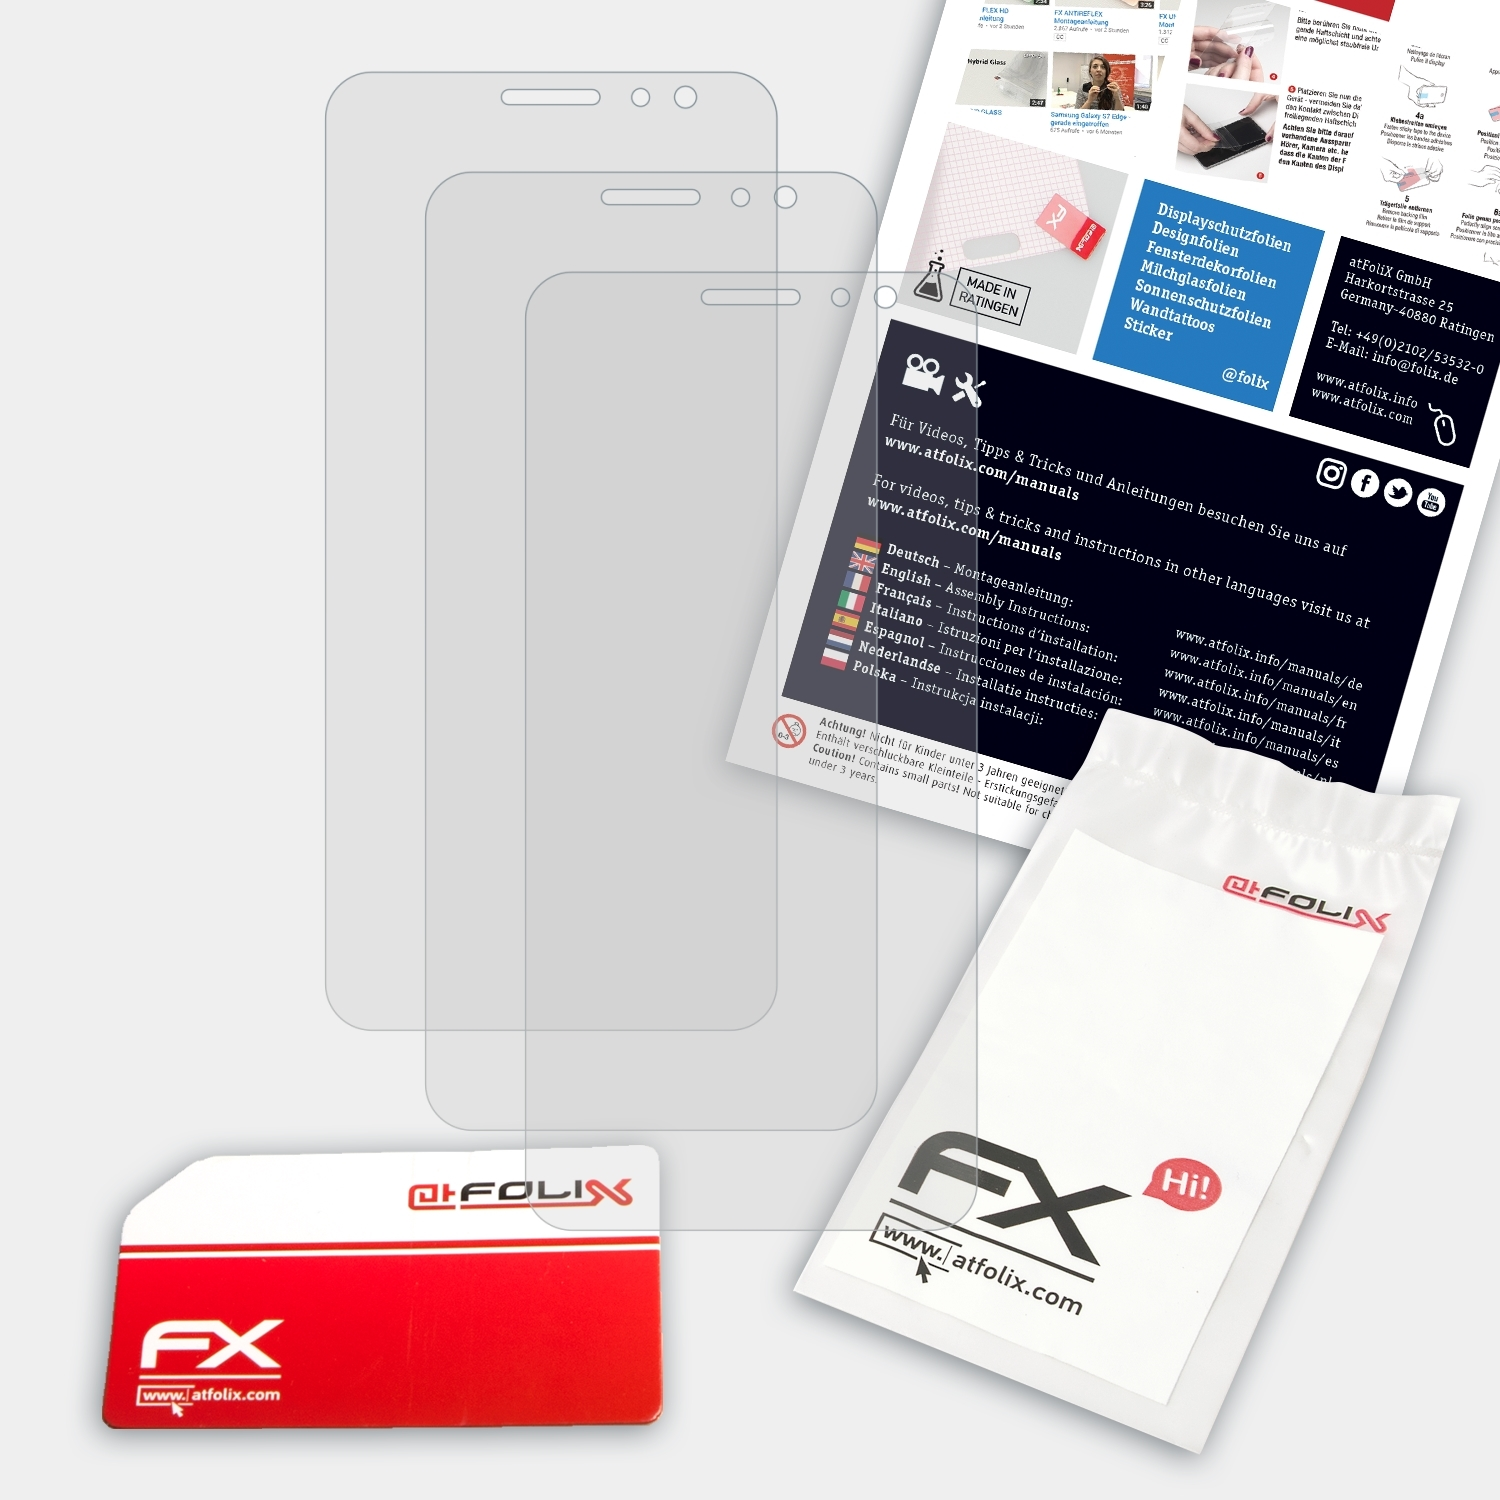 ATFOLIX 3x FX-Antireflex Huawei Plus) Nova Displayschutz(für